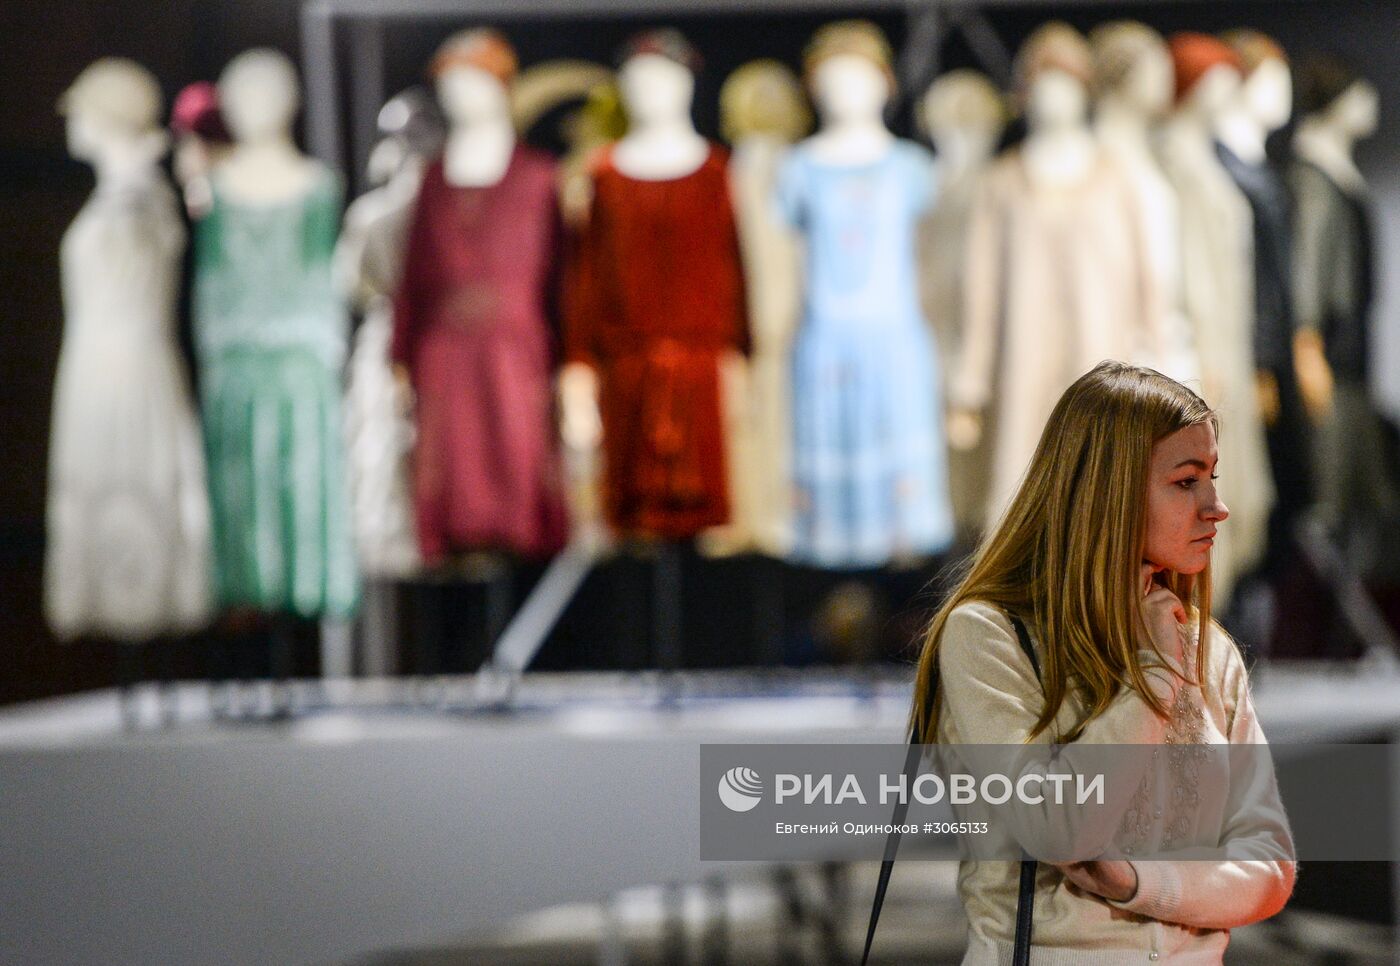 Открытие выставки "Москва. Мода и Революция"